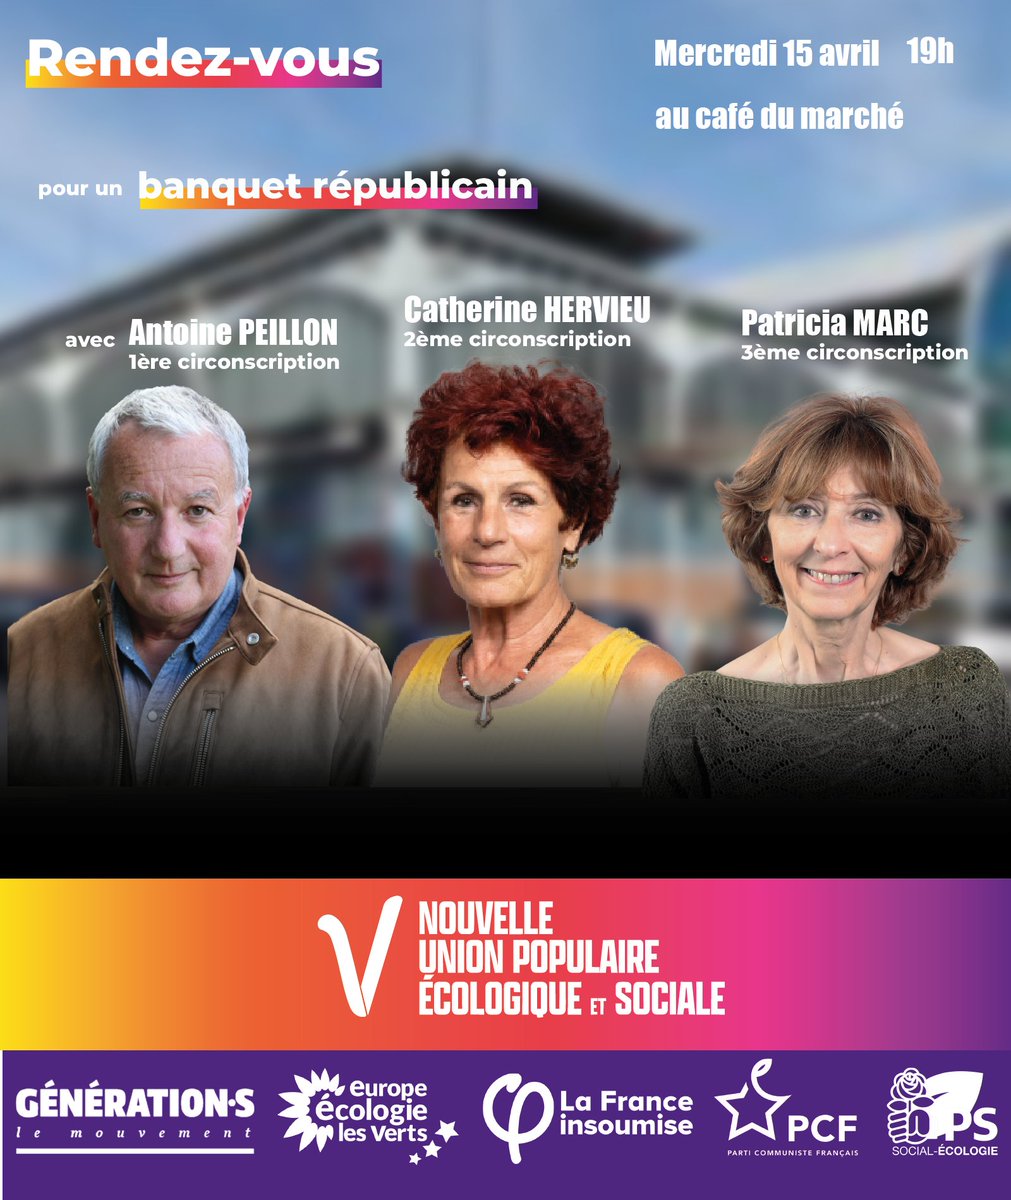 Retrouvez-moi ce soir à 19h, au café du marché à #Dijon en compagnie de @antoinepeillon et @CatHervieu 
à l'occasion du banquet républicain organisé par la #NUPES.

Nous vous attendons nombreux, ce sera une fois de plus l'occasion d'échanger !

#circo2101 #circo2102 #circo2103